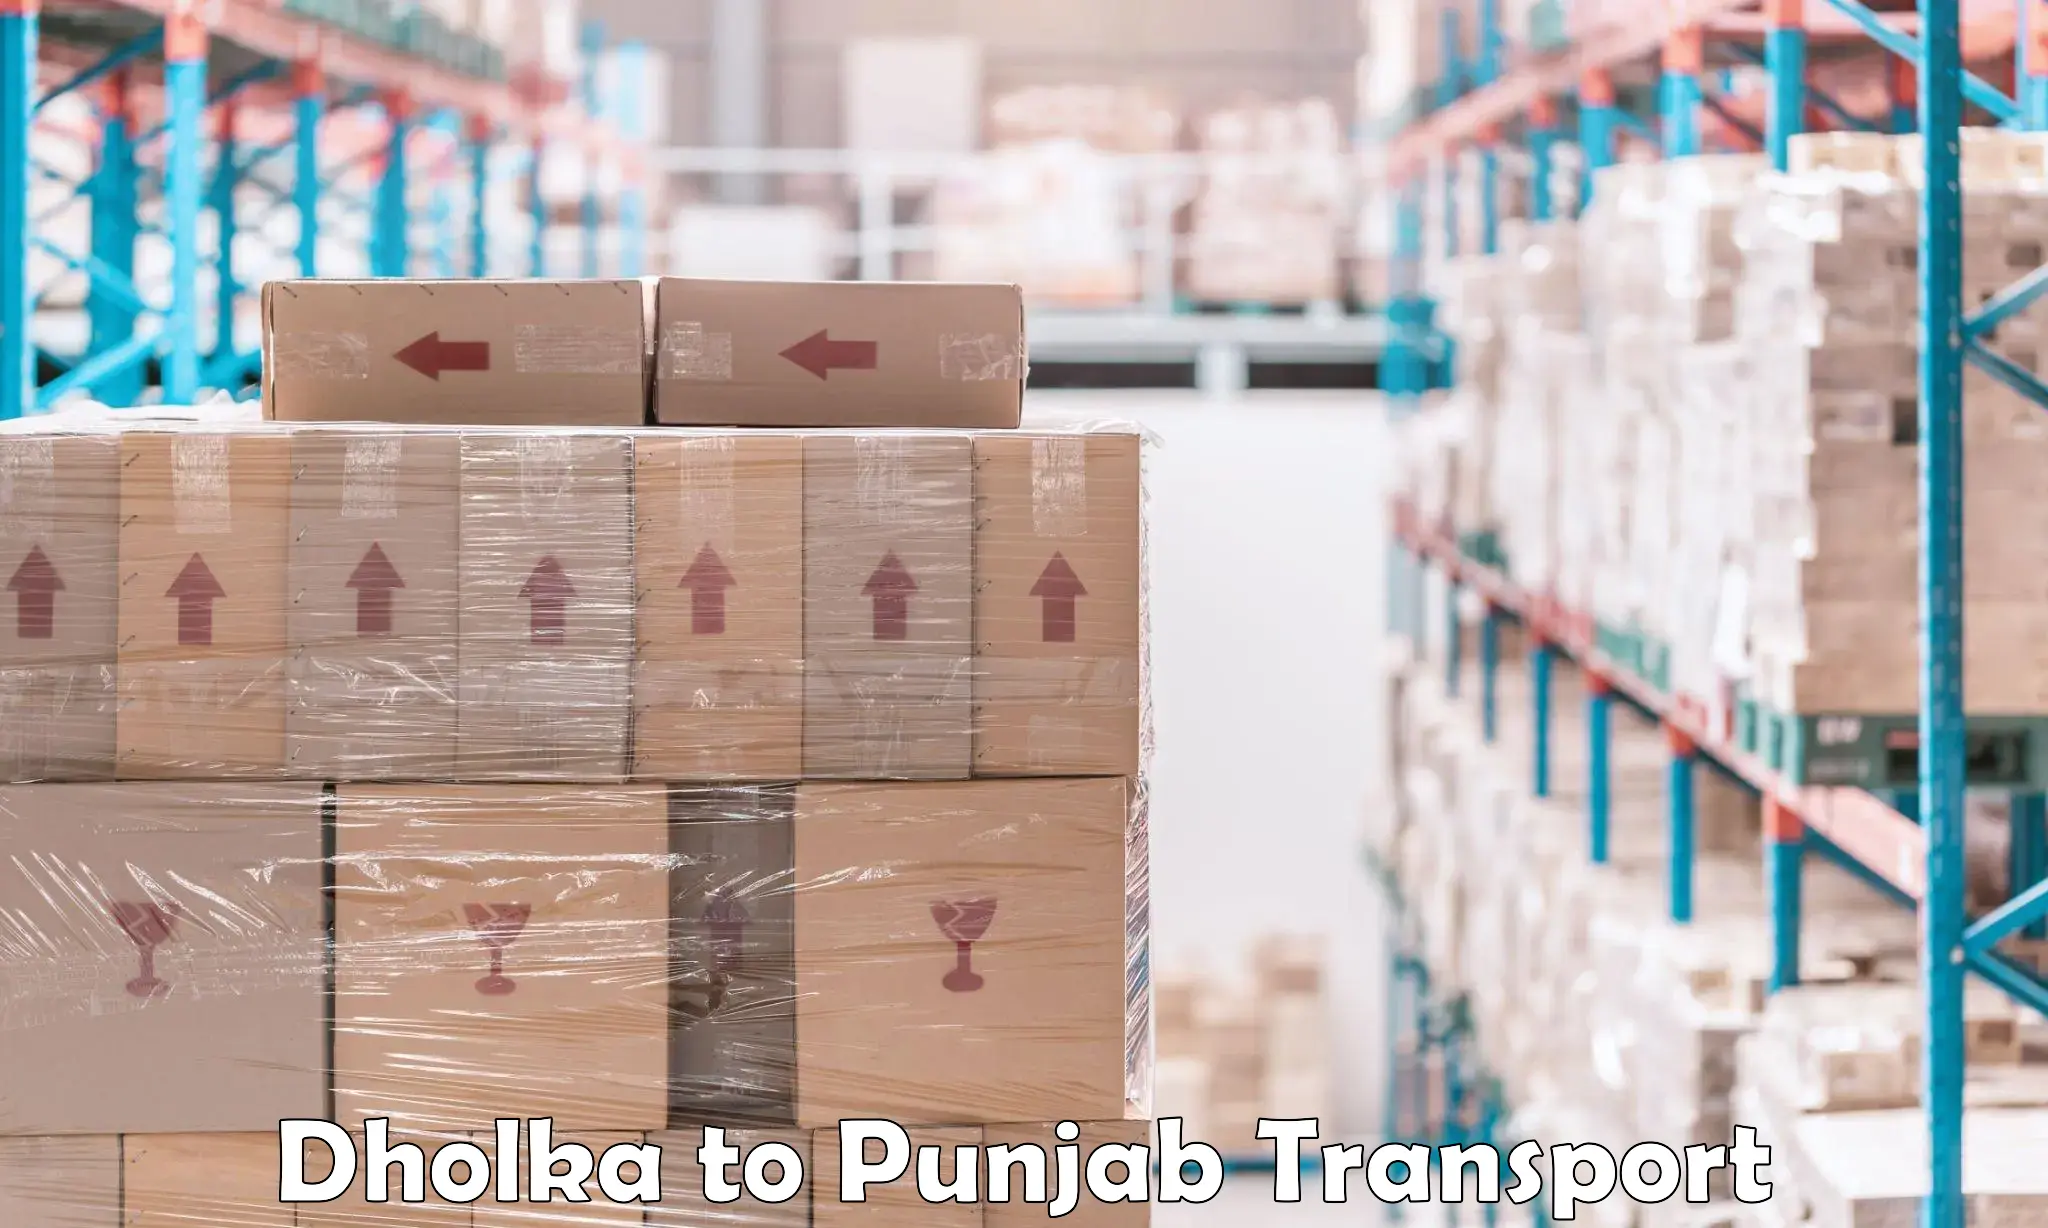 Parcel transport services Dholka to Phillaur